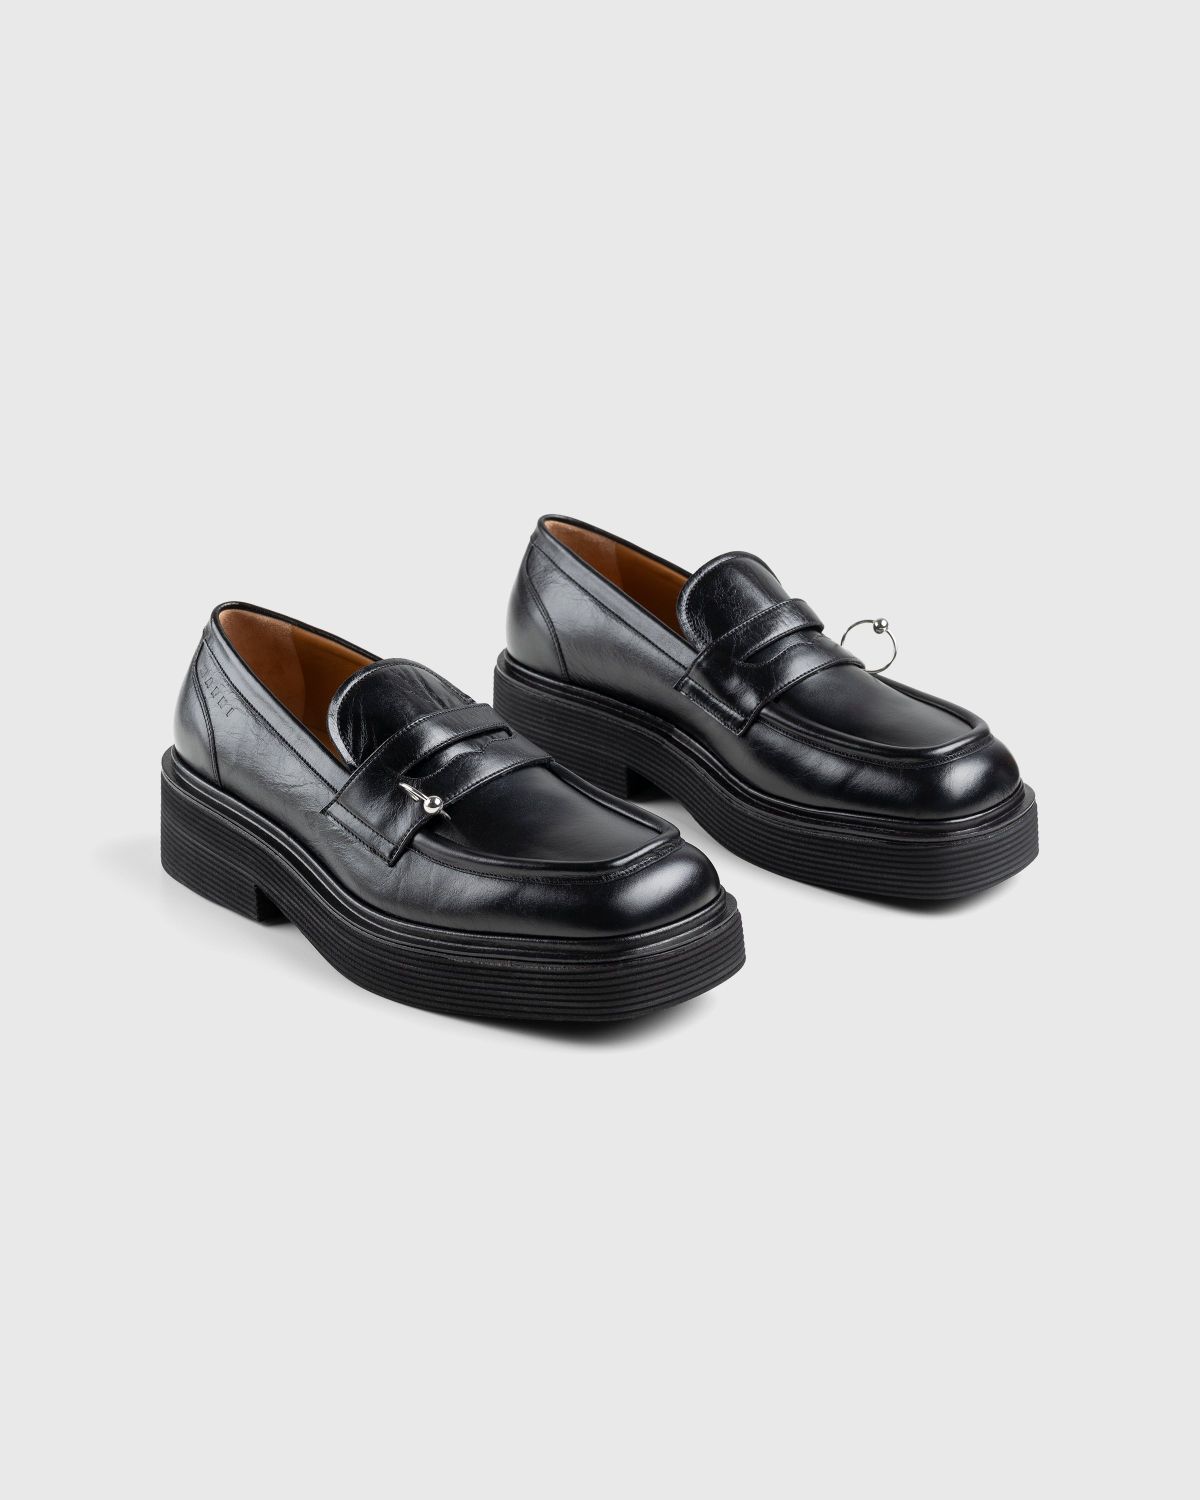 Marni – Shiny Leather Moccasin Black - Shoes - Black - Image 4